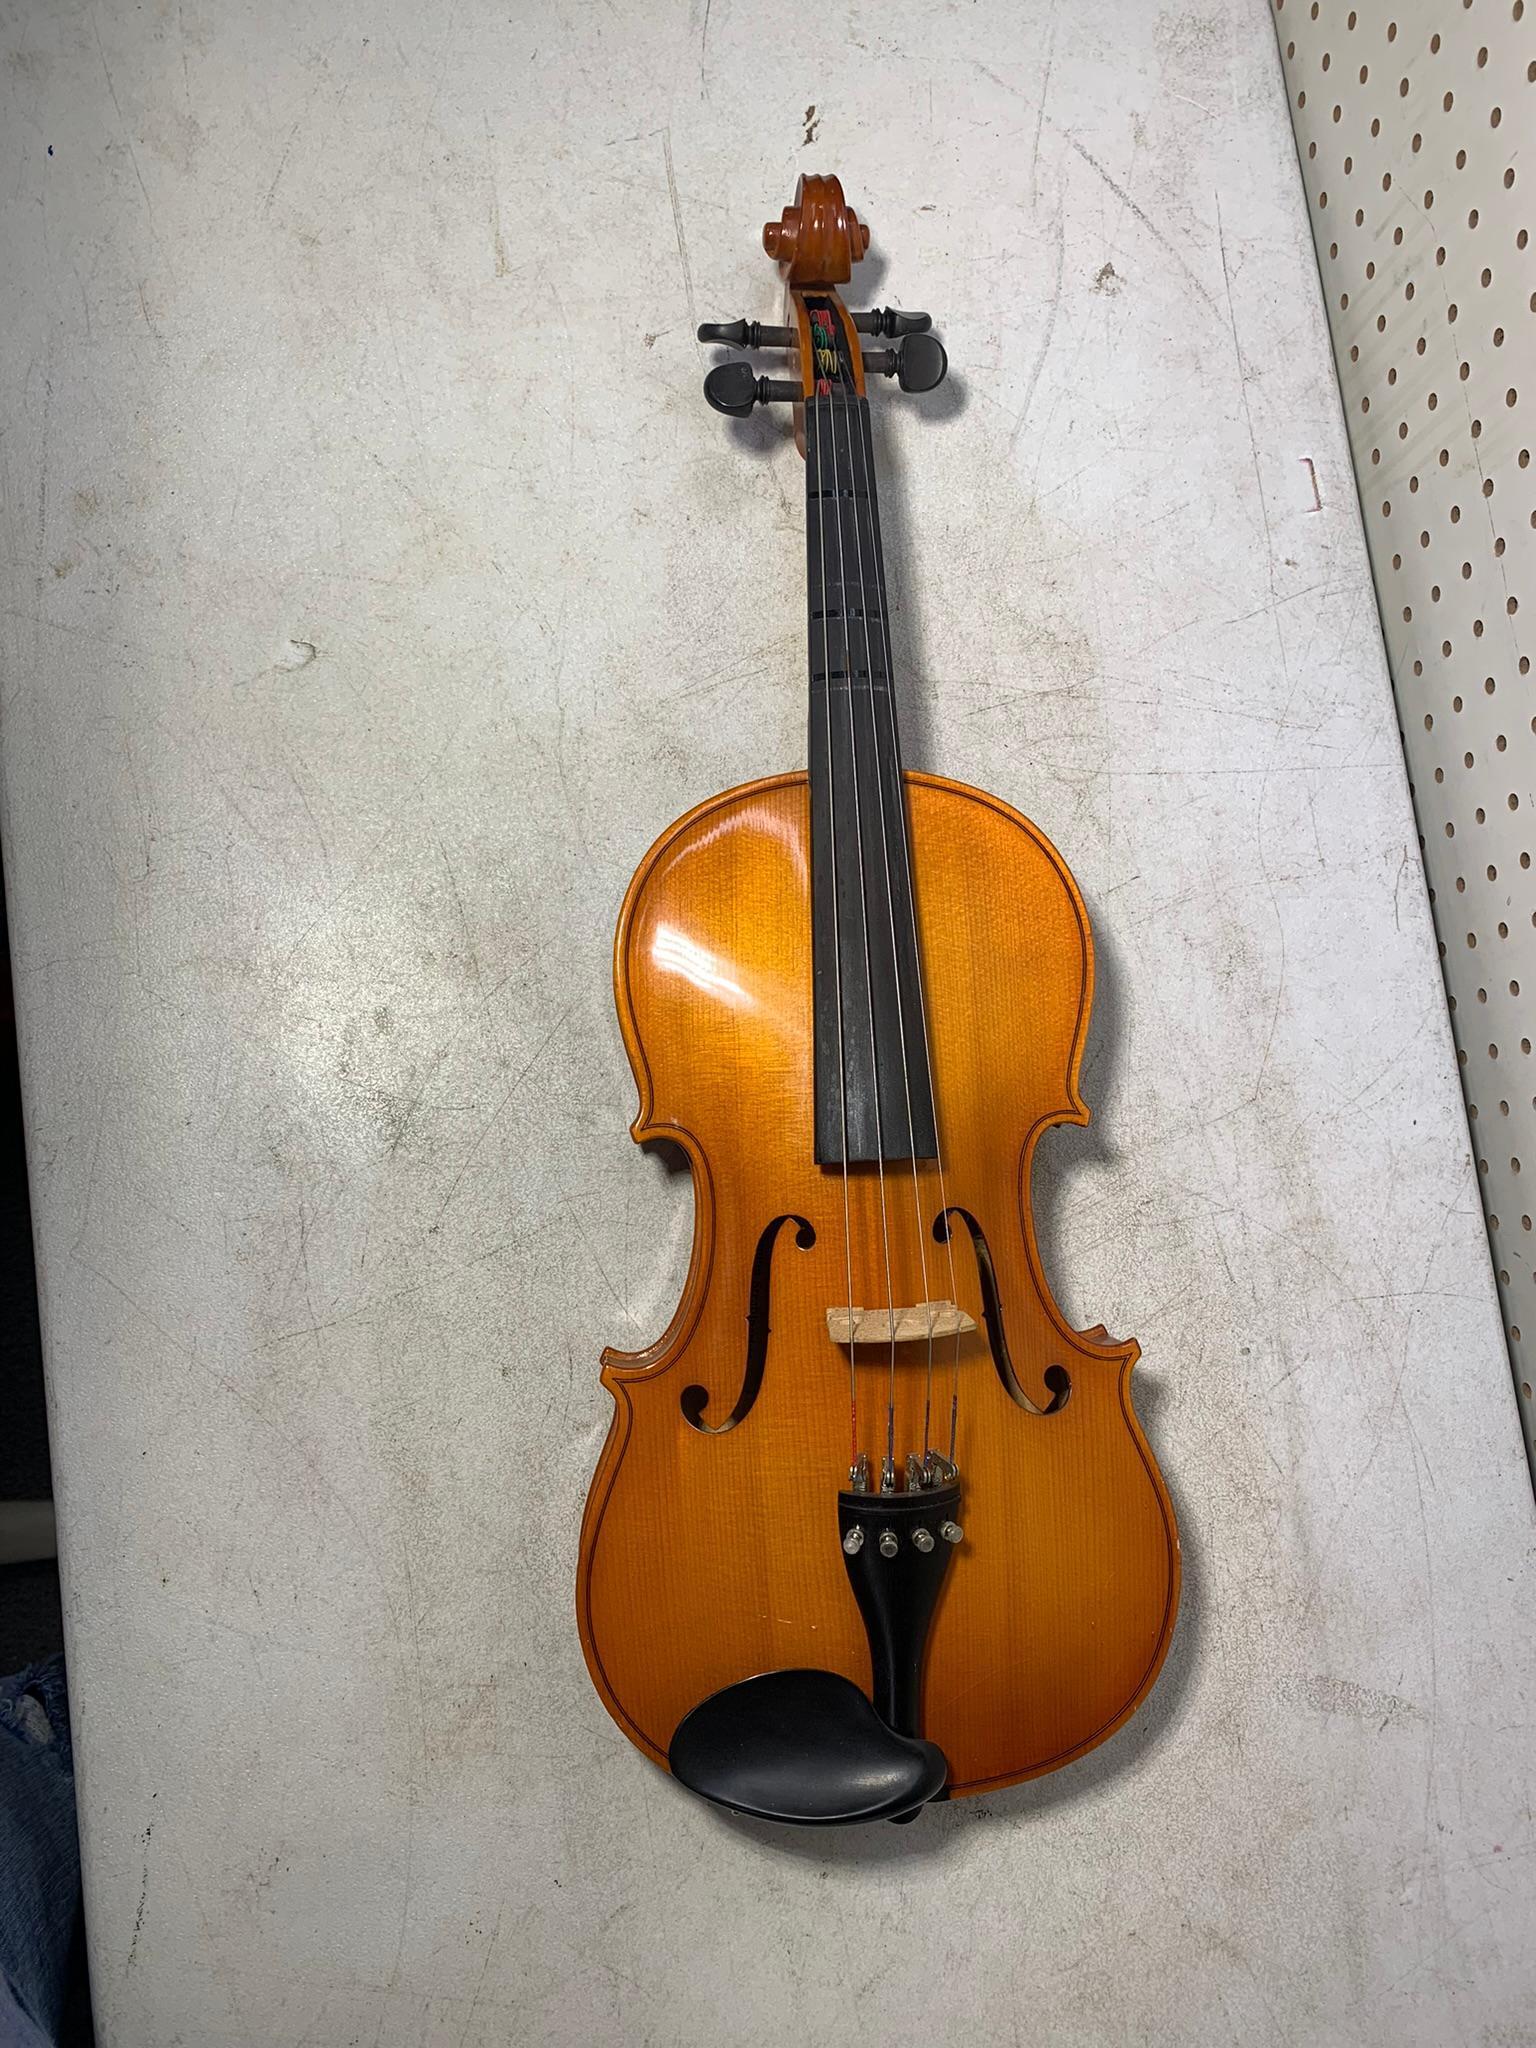 Viola - Copy of Antonius Stradivarius Faciebat with Case